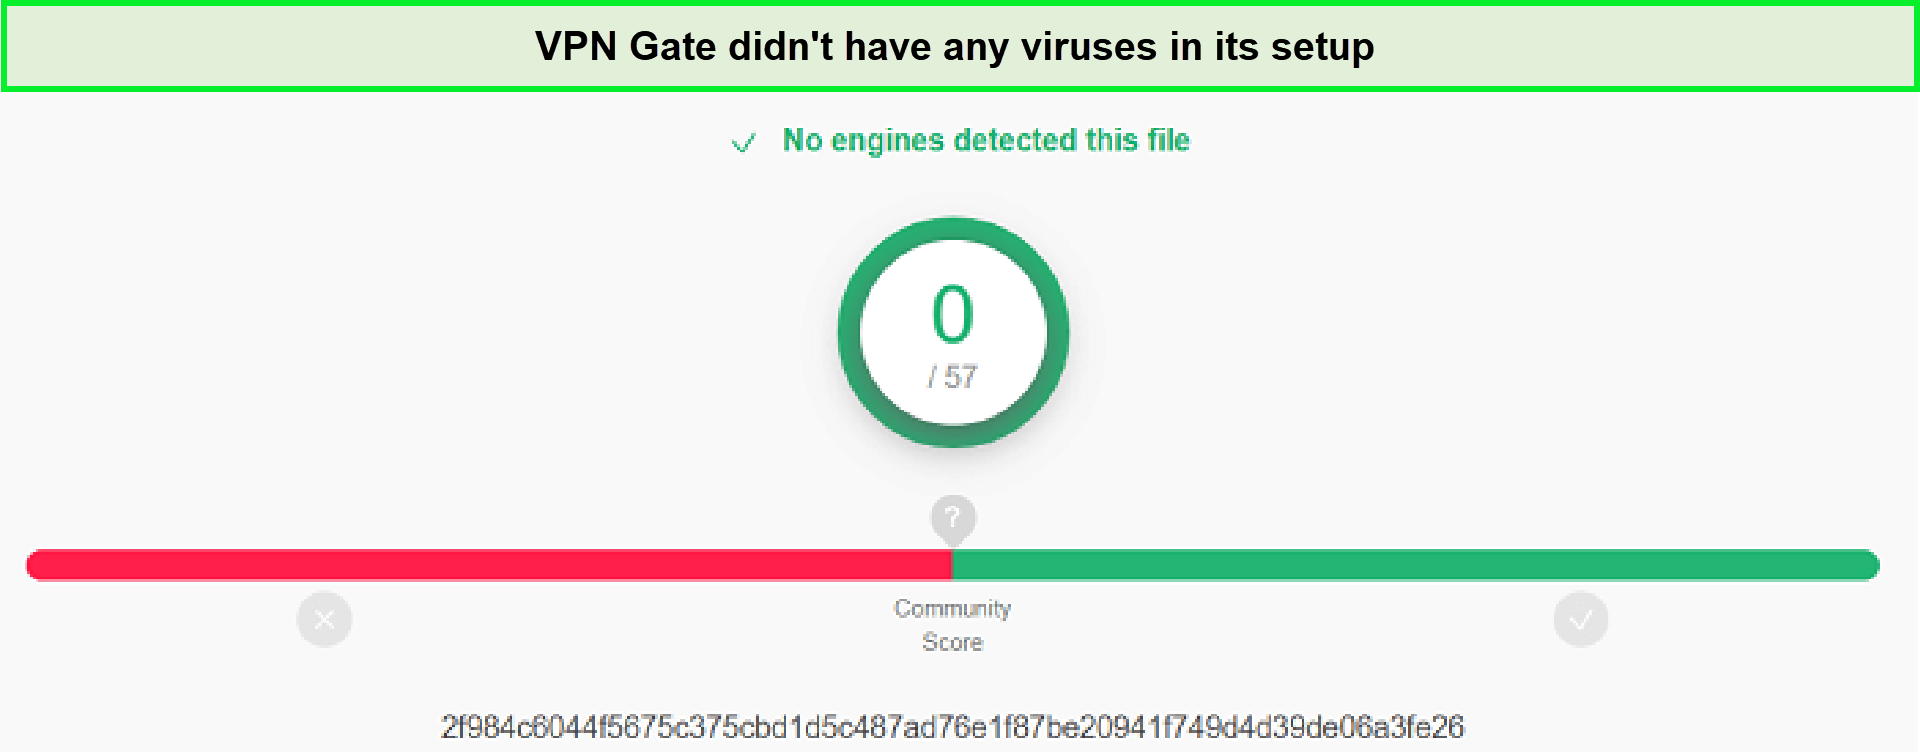 Virus-Test-in-USA-VPN-Gate